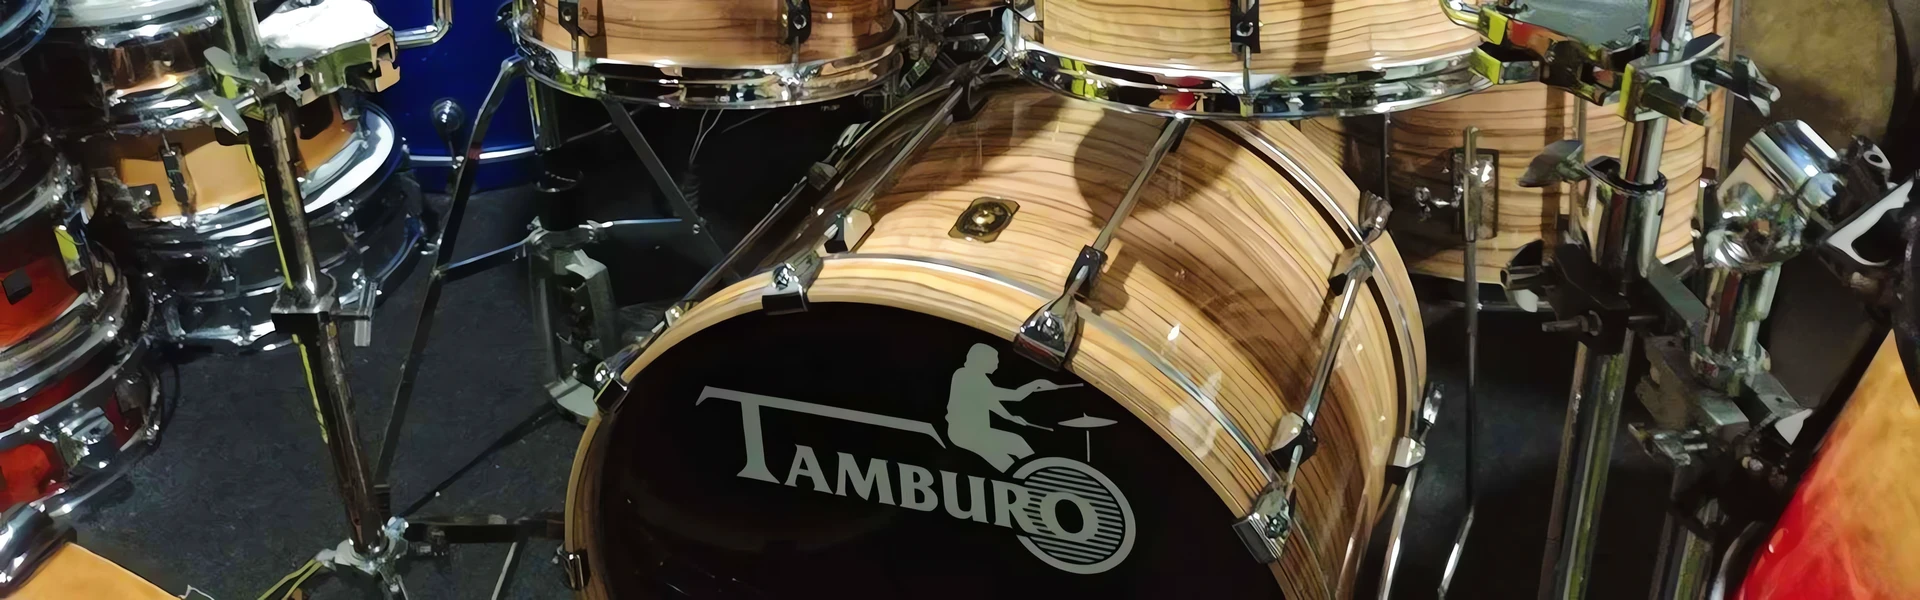 Zestaw perkusyjny Tamburo Unika 